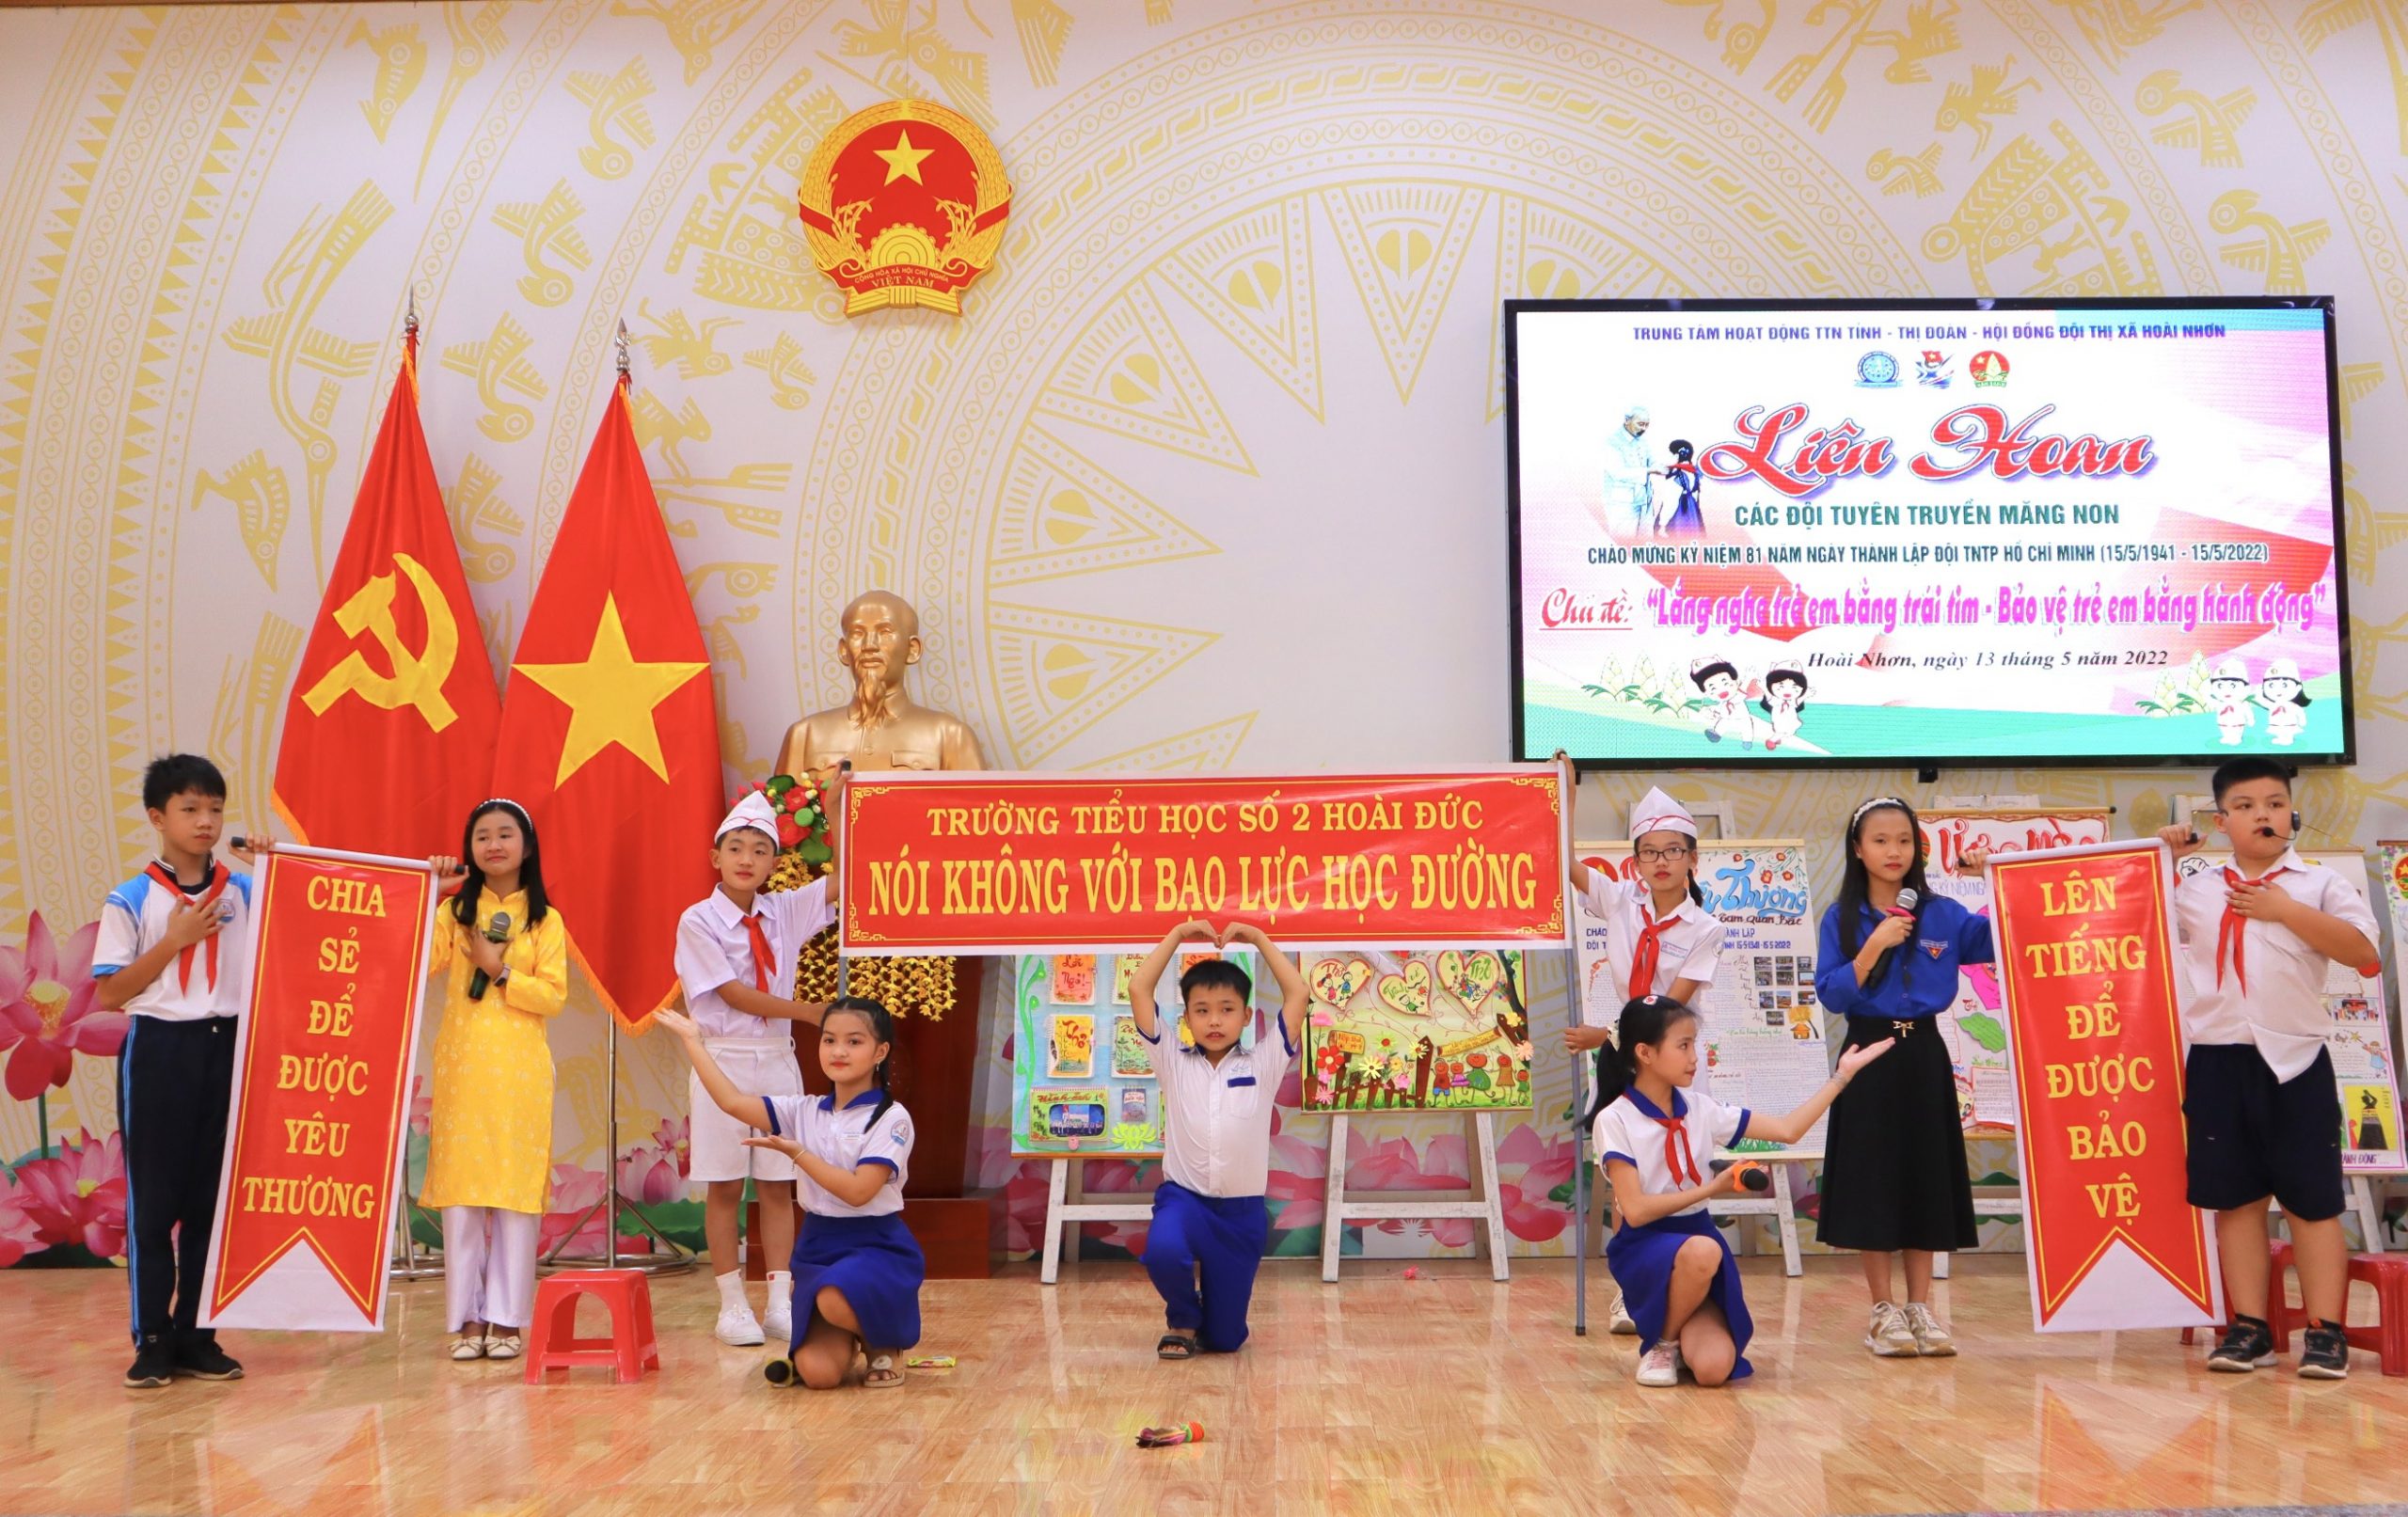 Liên hoan các đội tuyên truyền măng non – Thị xã Hoài Nhơn